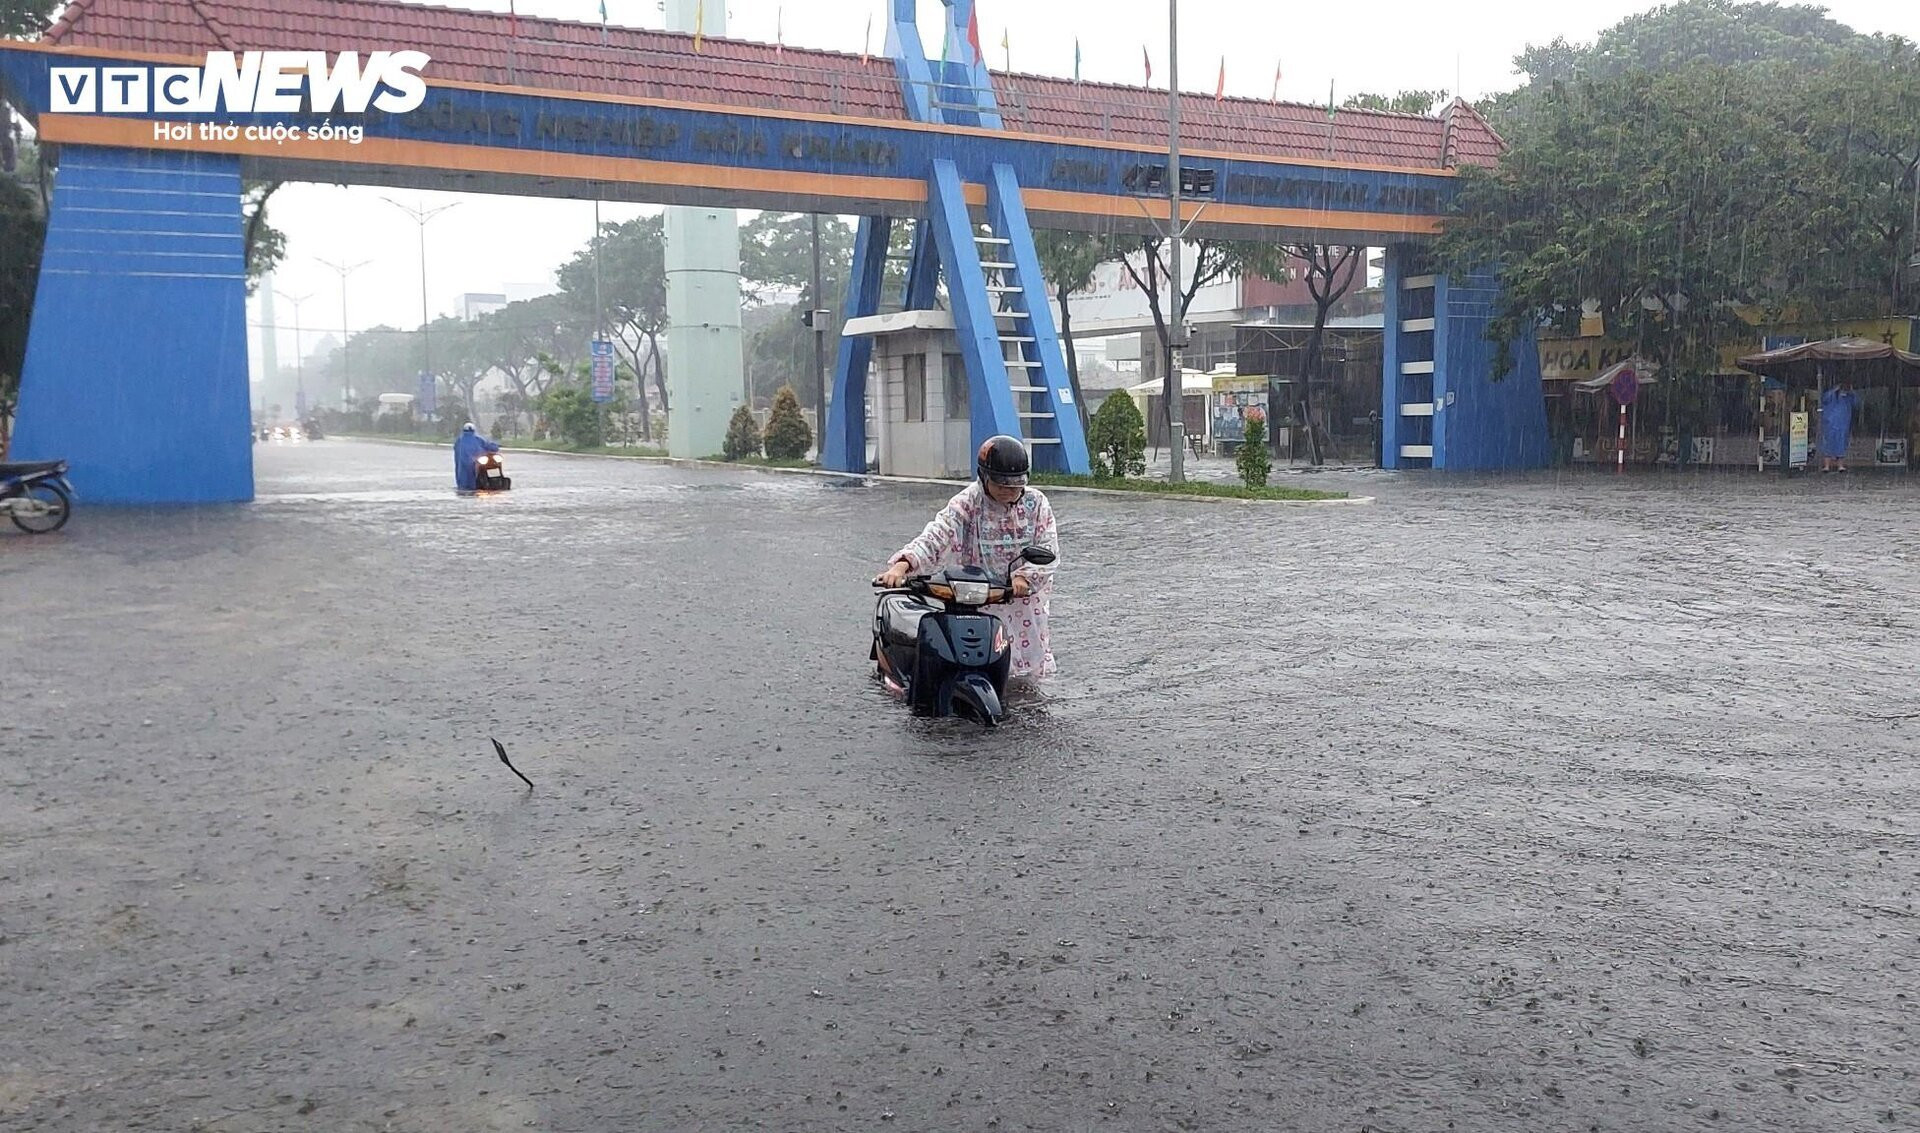 Đường phố Đà Nẵng thành sông sau mưa lớn, dân khổ sở đẩy xe giữa biển nước  - 1